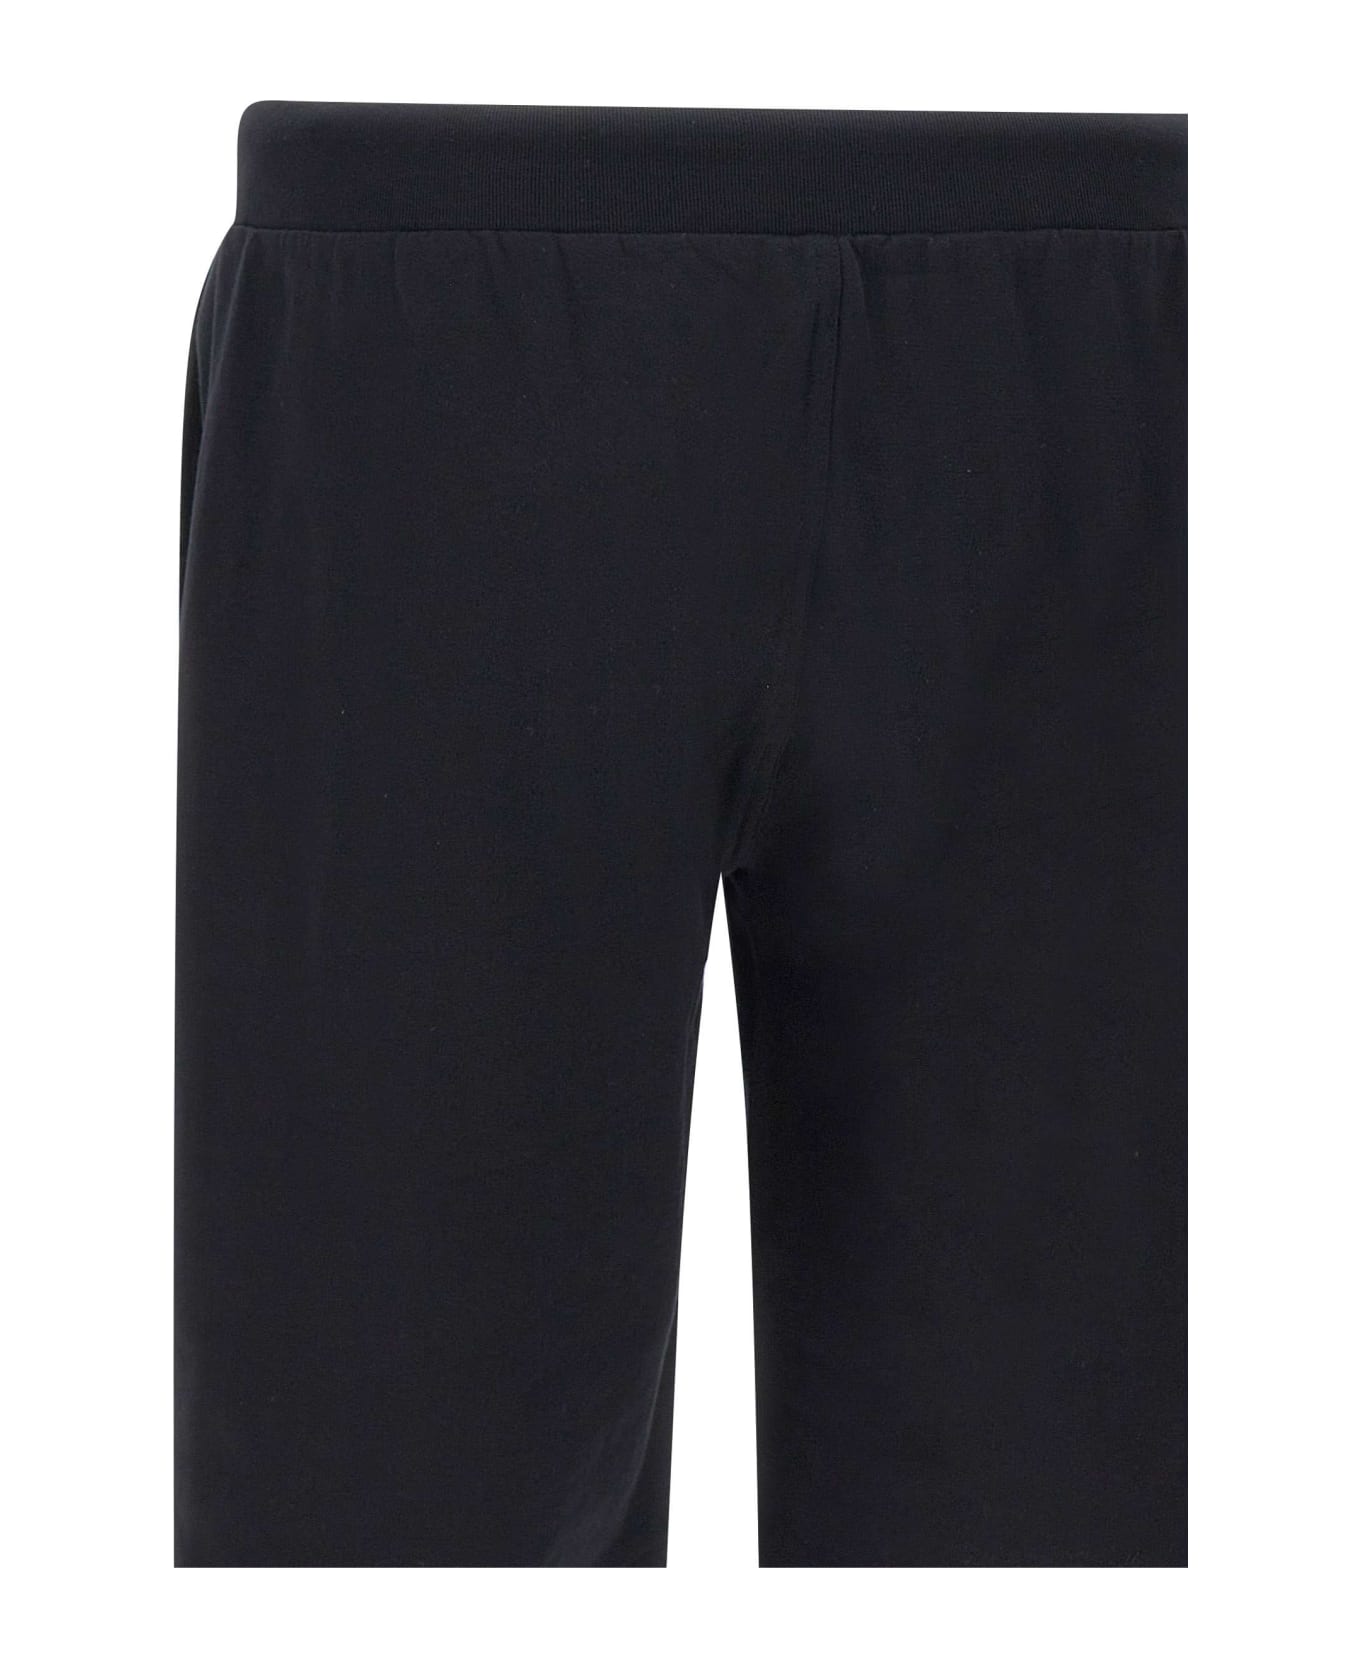 Polo Ralph Lauren Cotton Shorts - BLACK